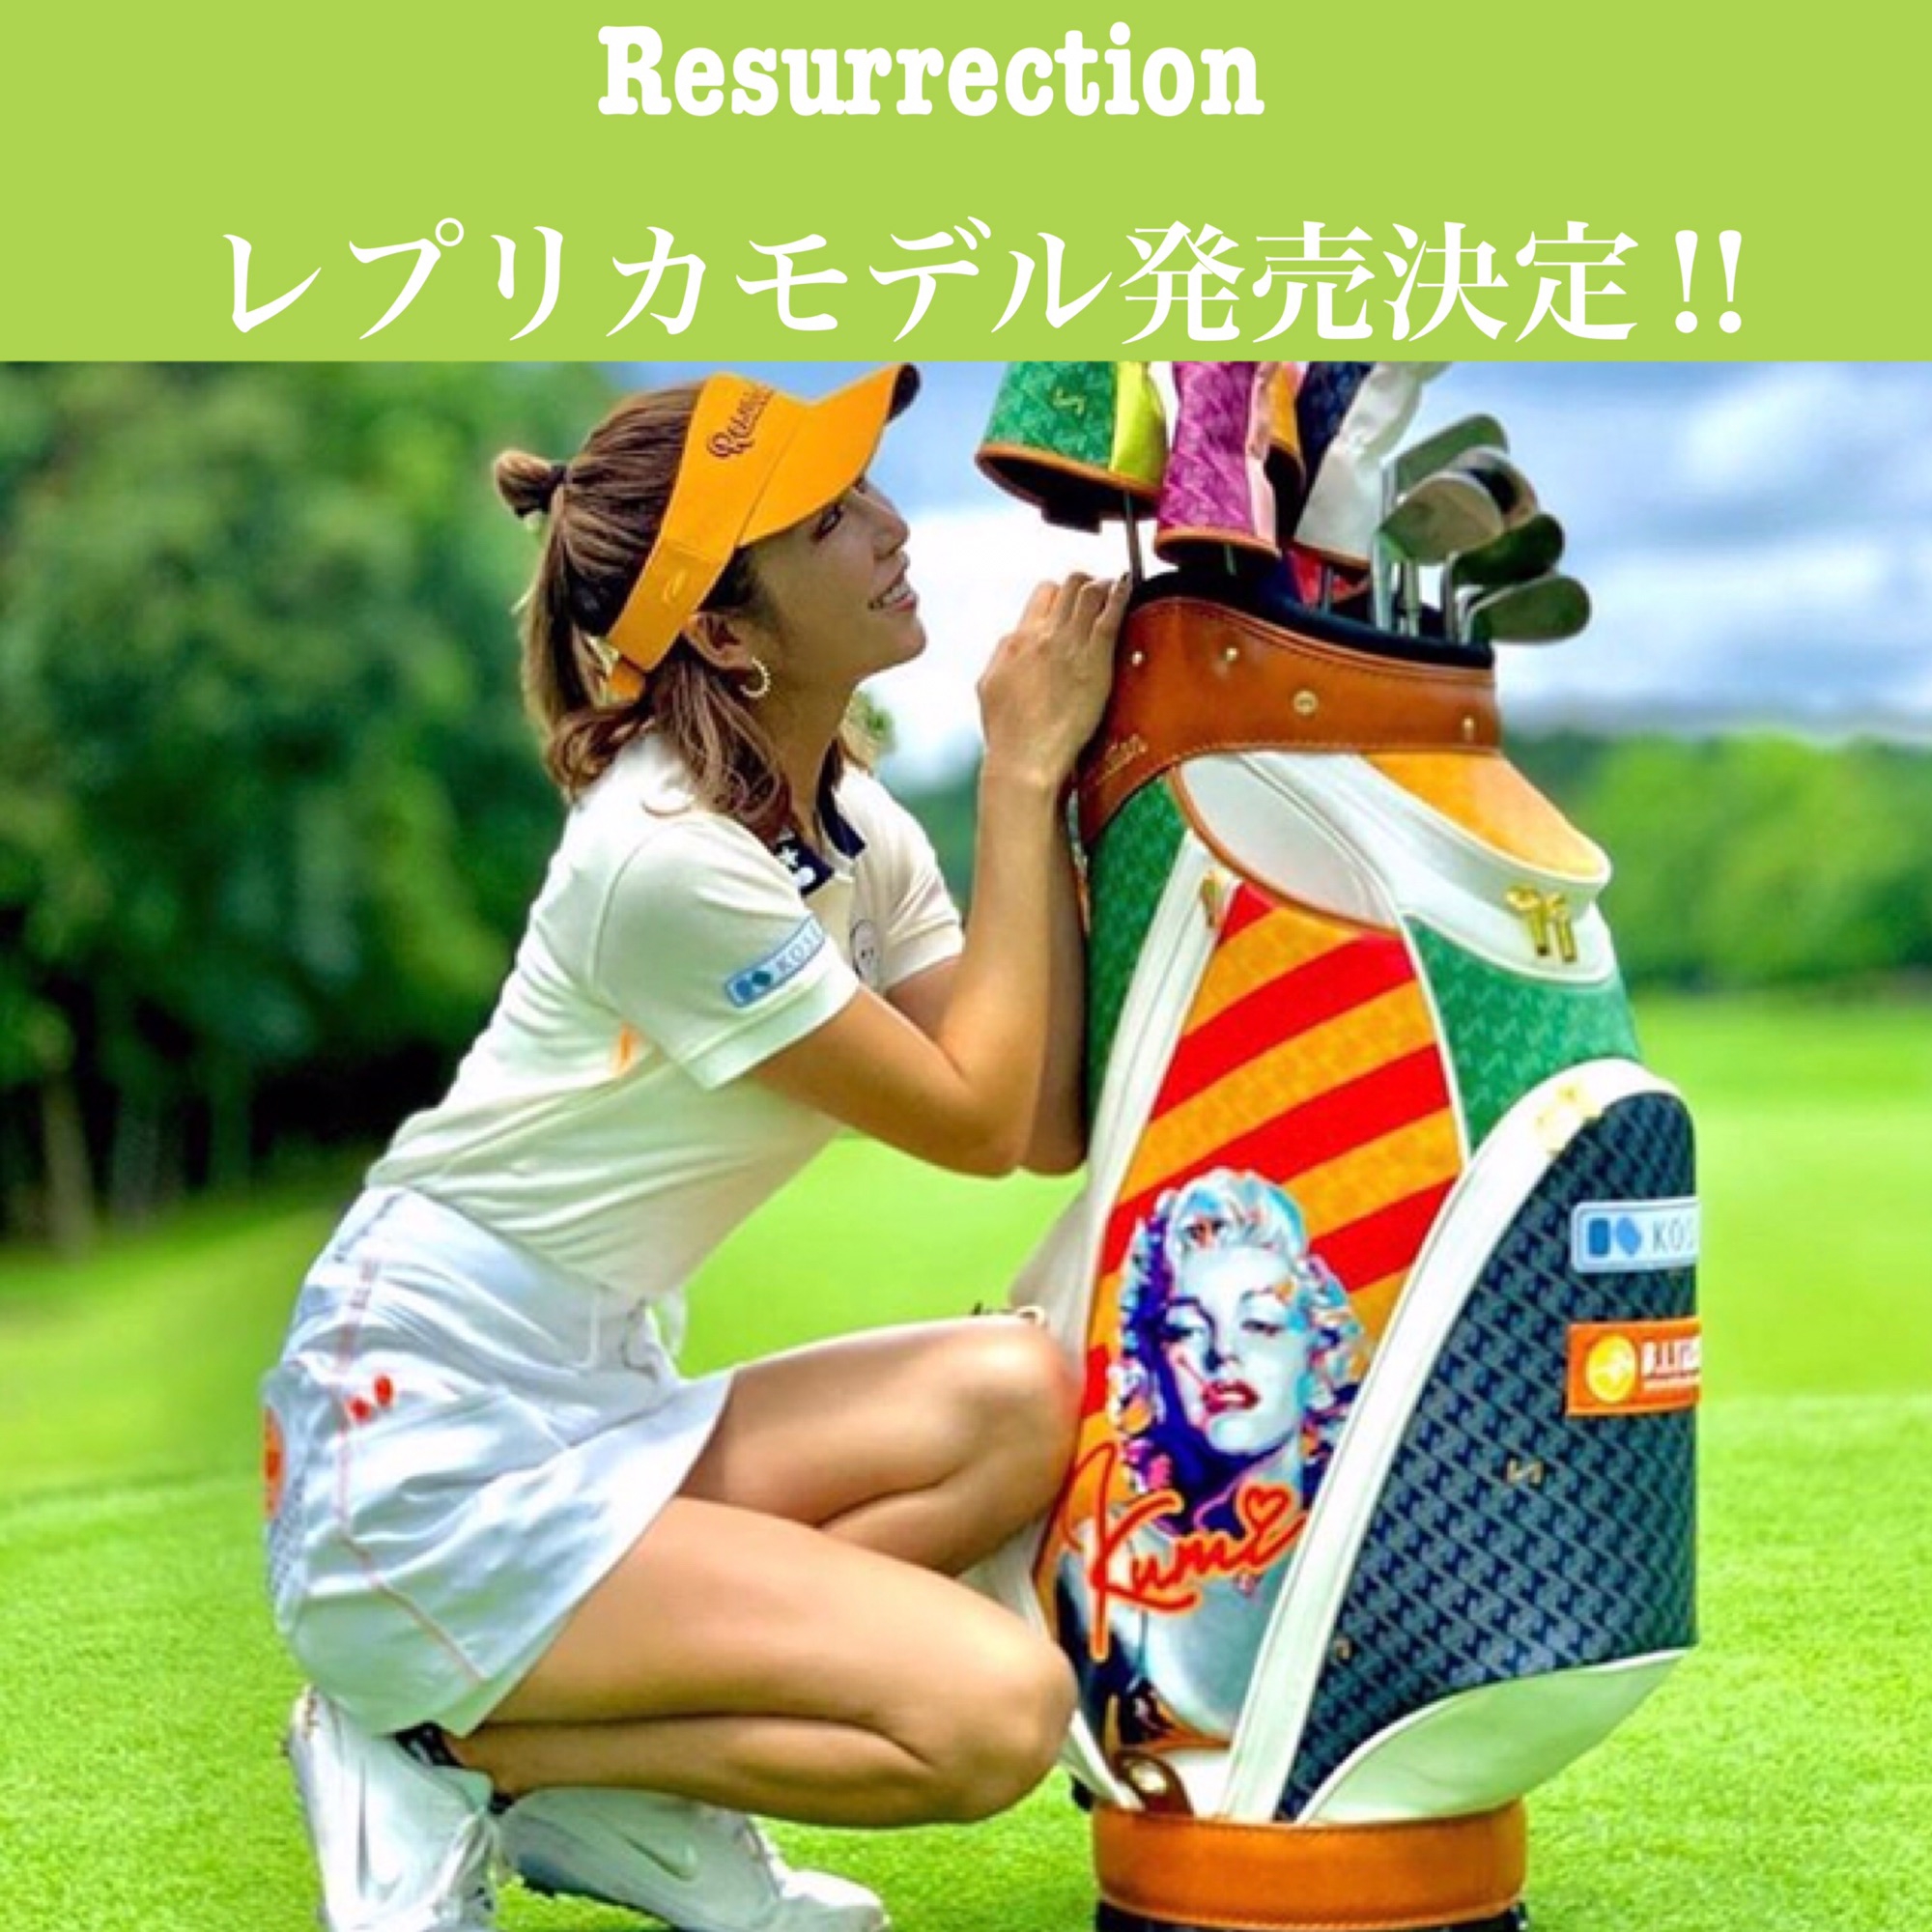 Resurrection レプリカモデル発売決定！ | Bloon&magic オフィシャルサイト